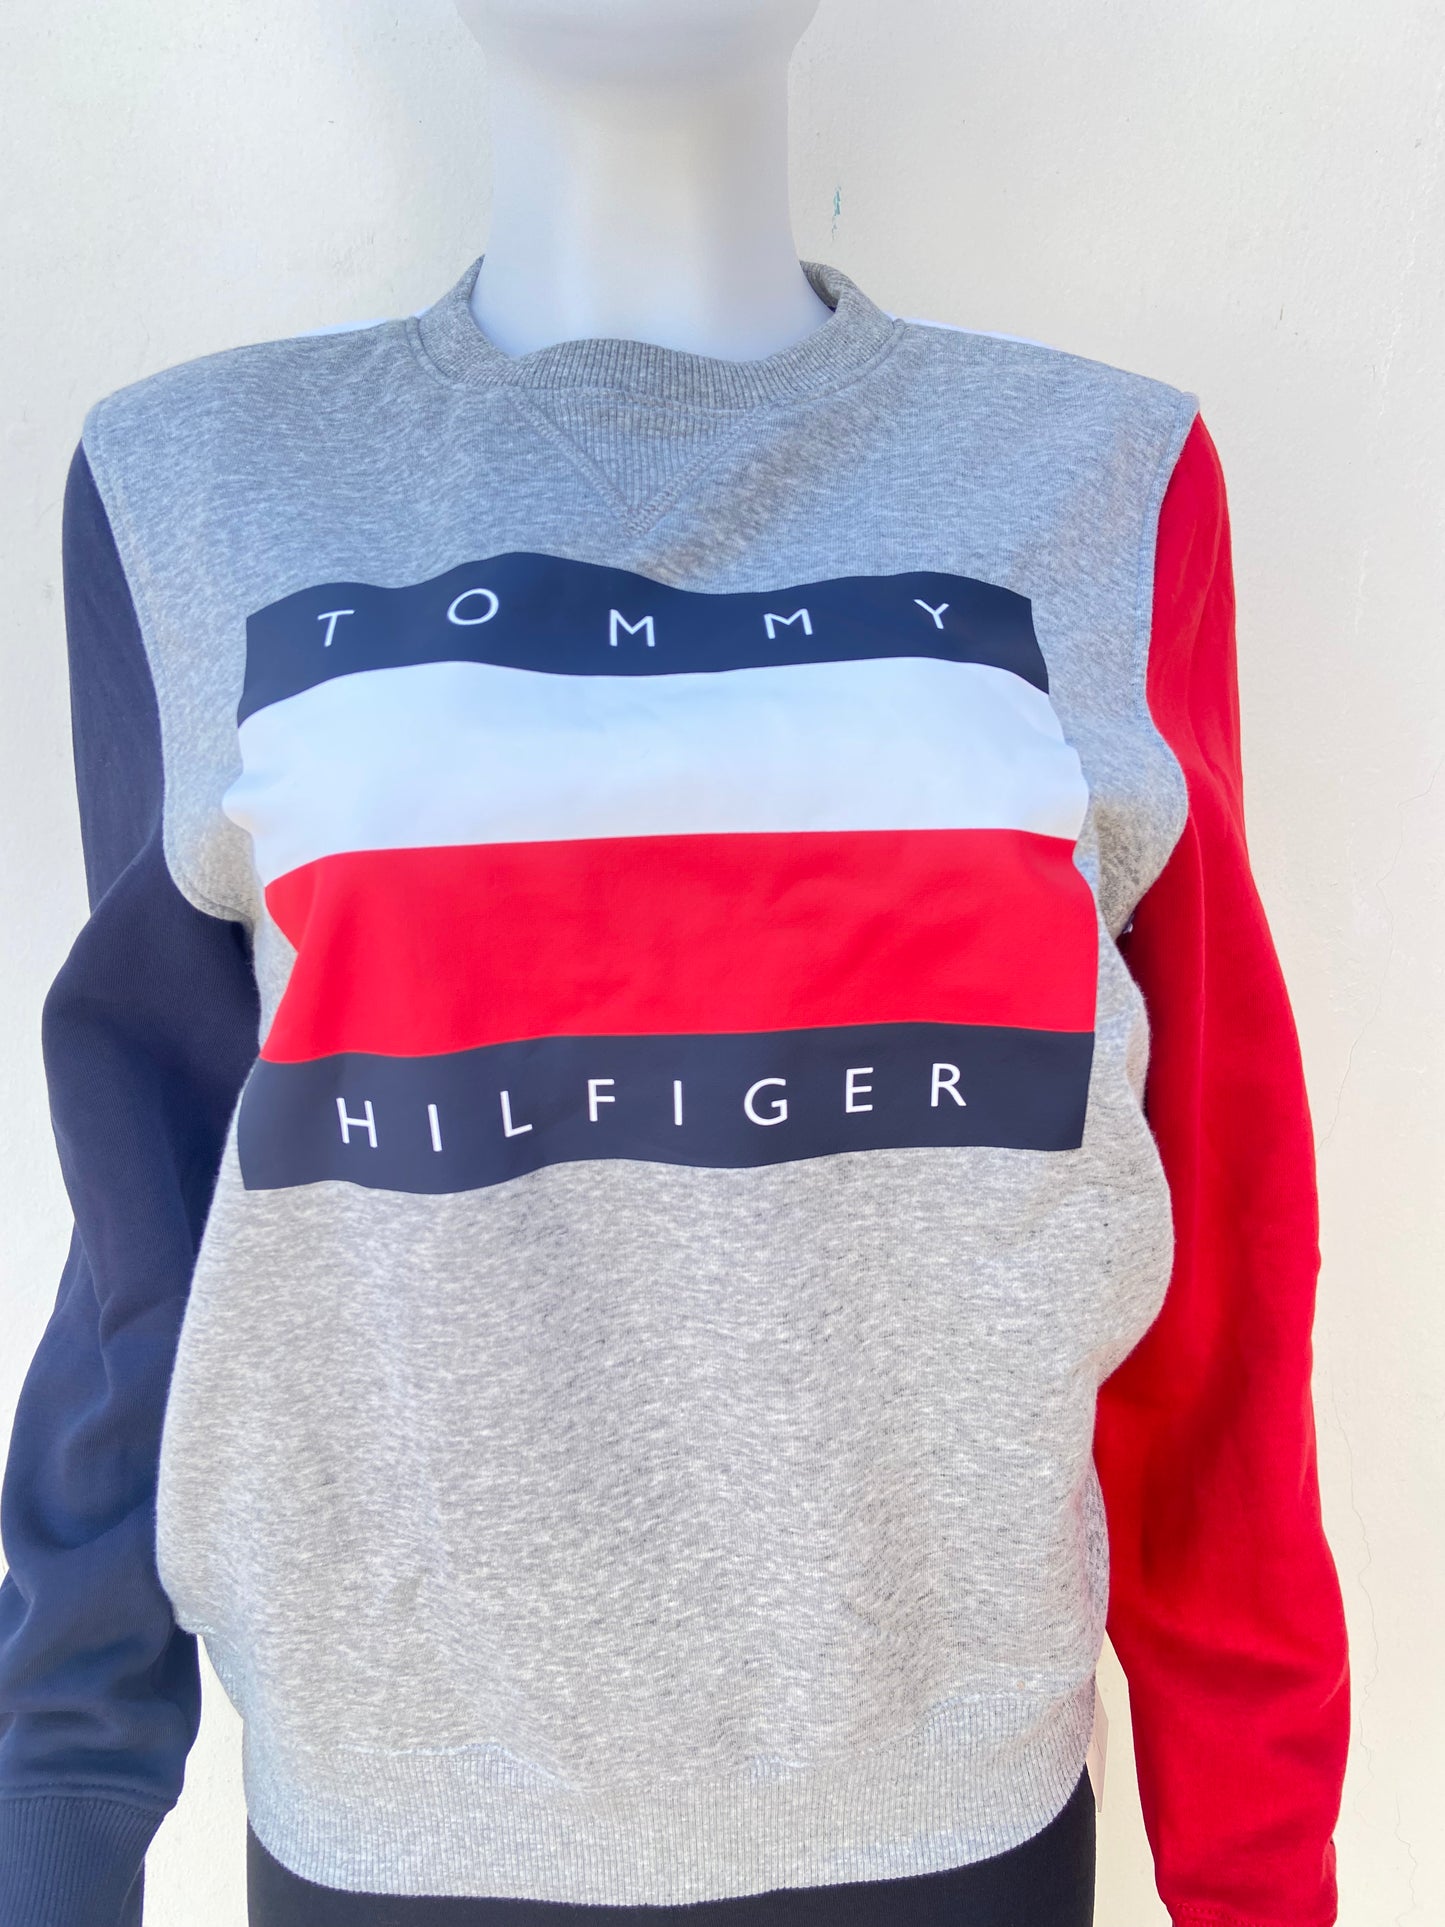 Sueter / Abrigo  Tommy Hilfiger original gris con mangas en color rojo y azul marino y estampado con letras TOMMY HILFIGER con la banda de Tommy, manga larga.